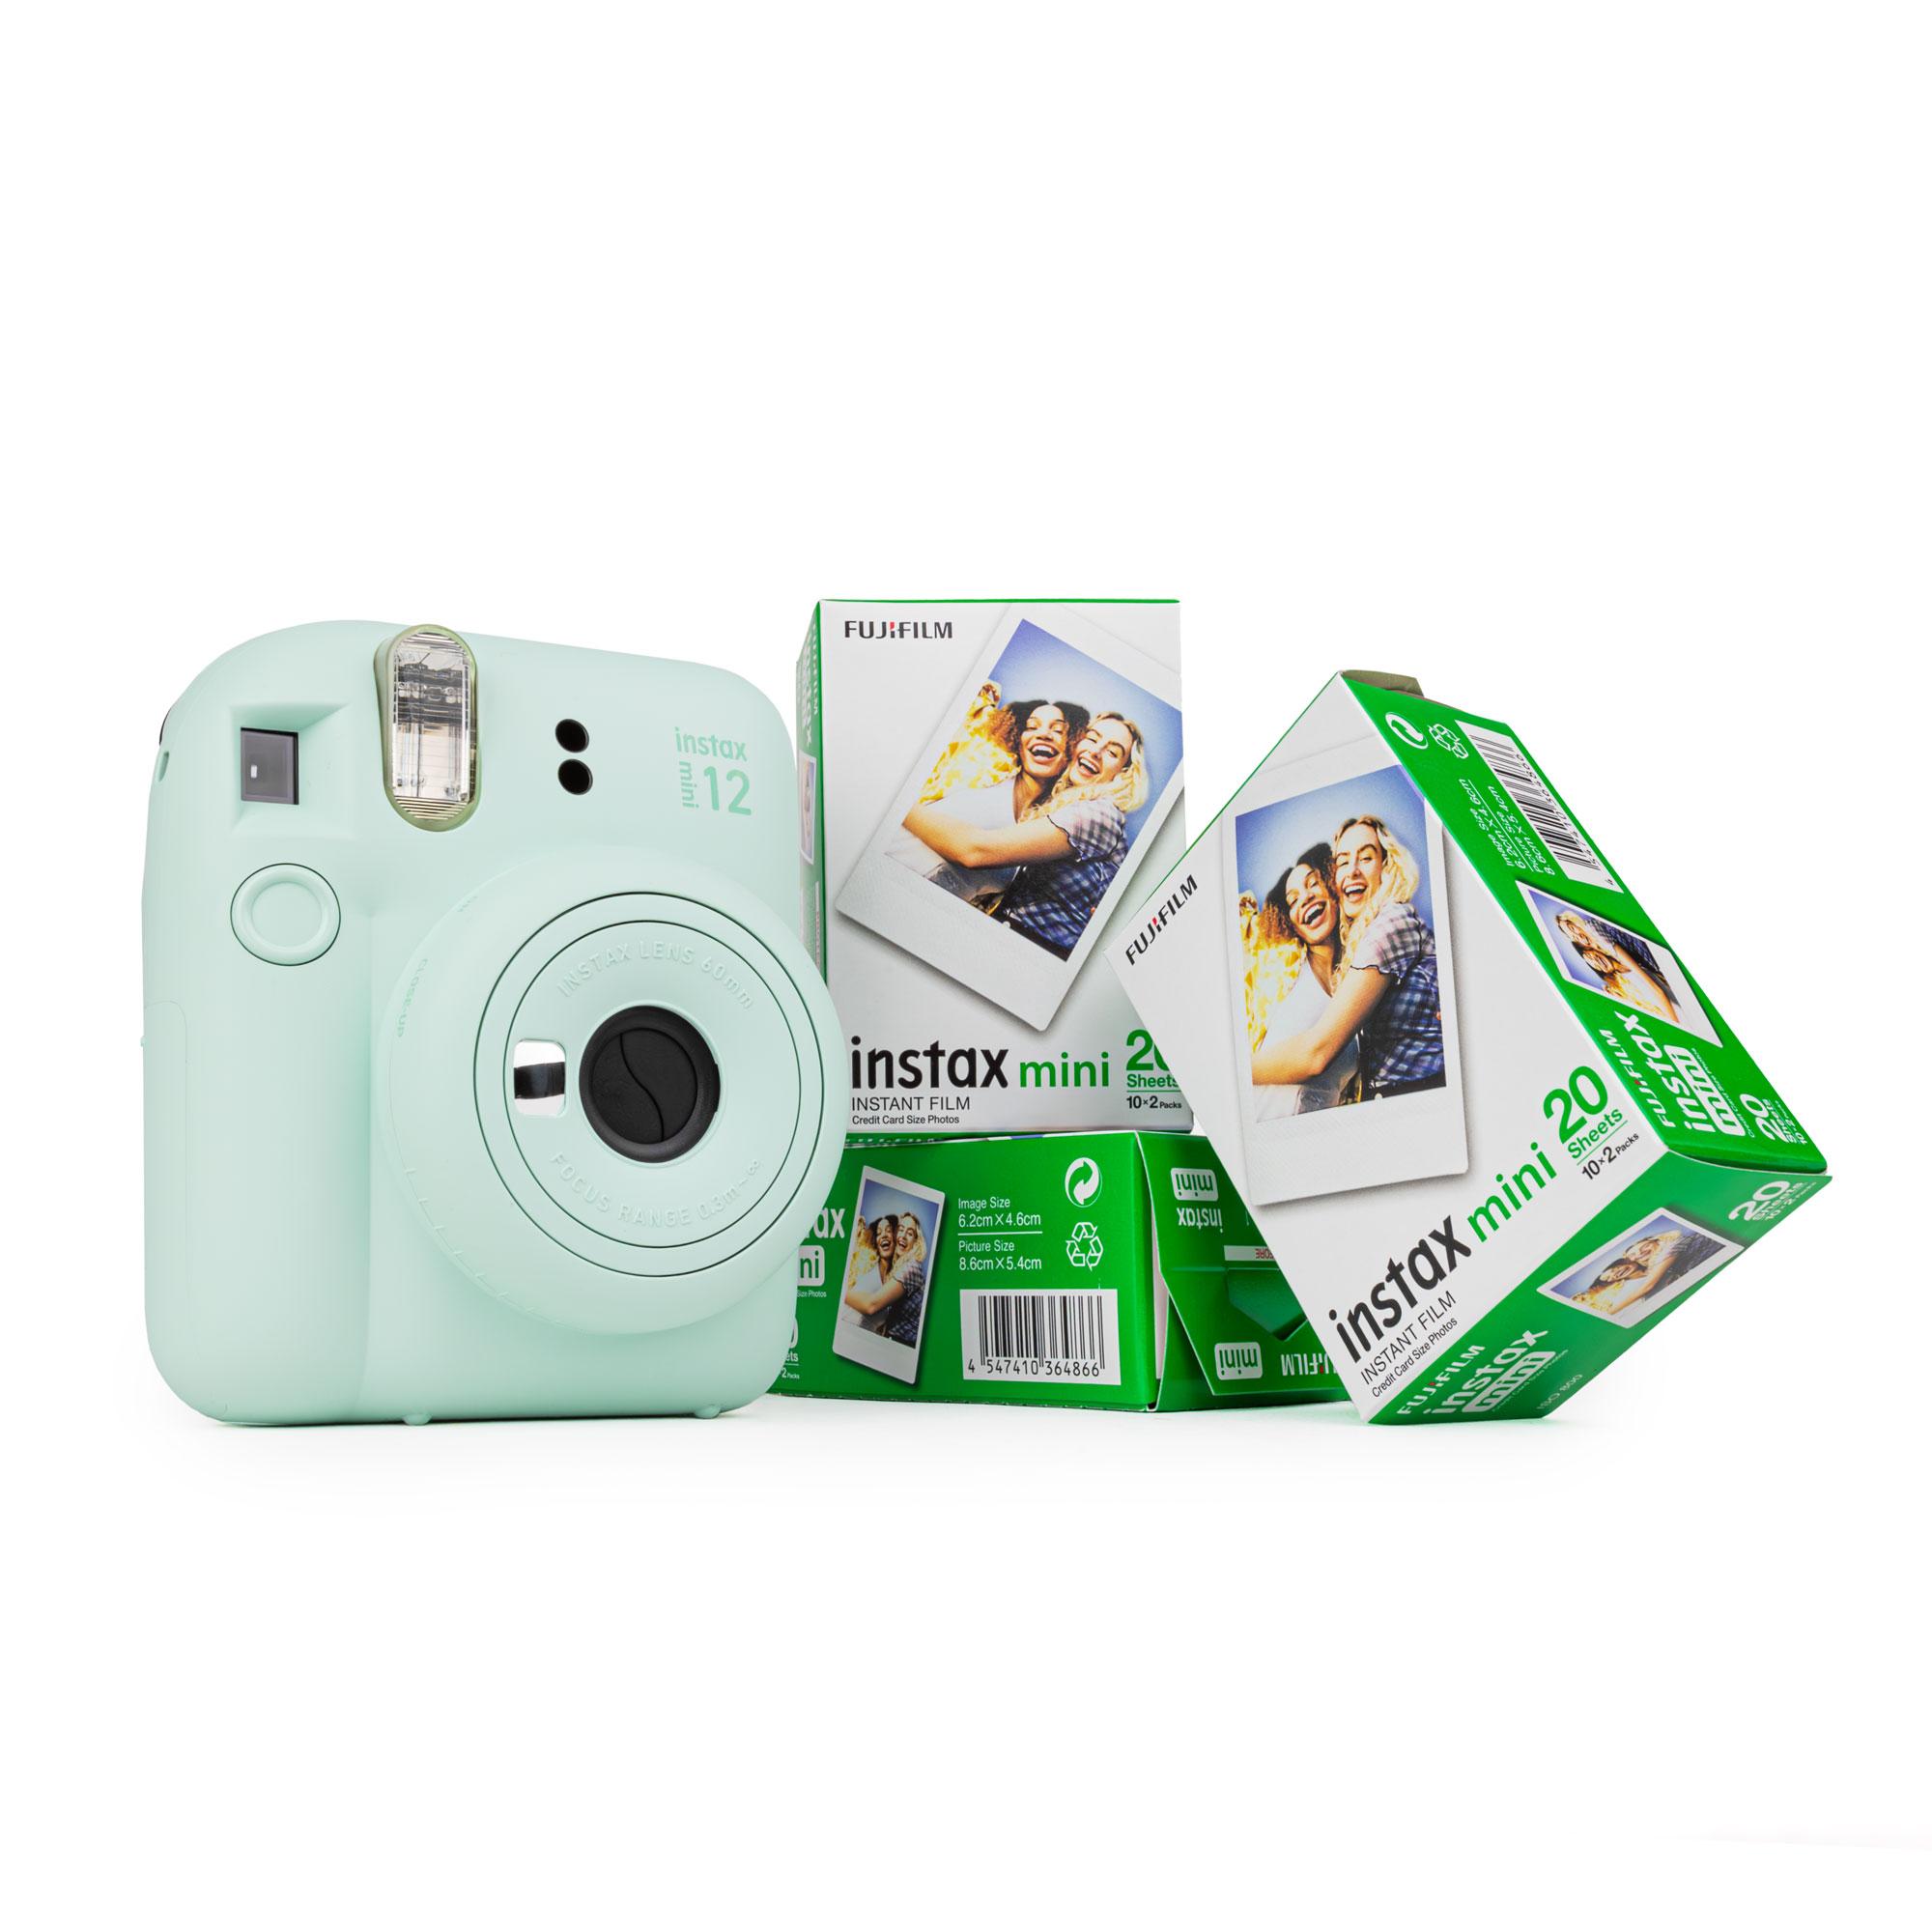 Set Fuji Instax Mini 12 Sofortbildkamera mint green + 3 Film DP